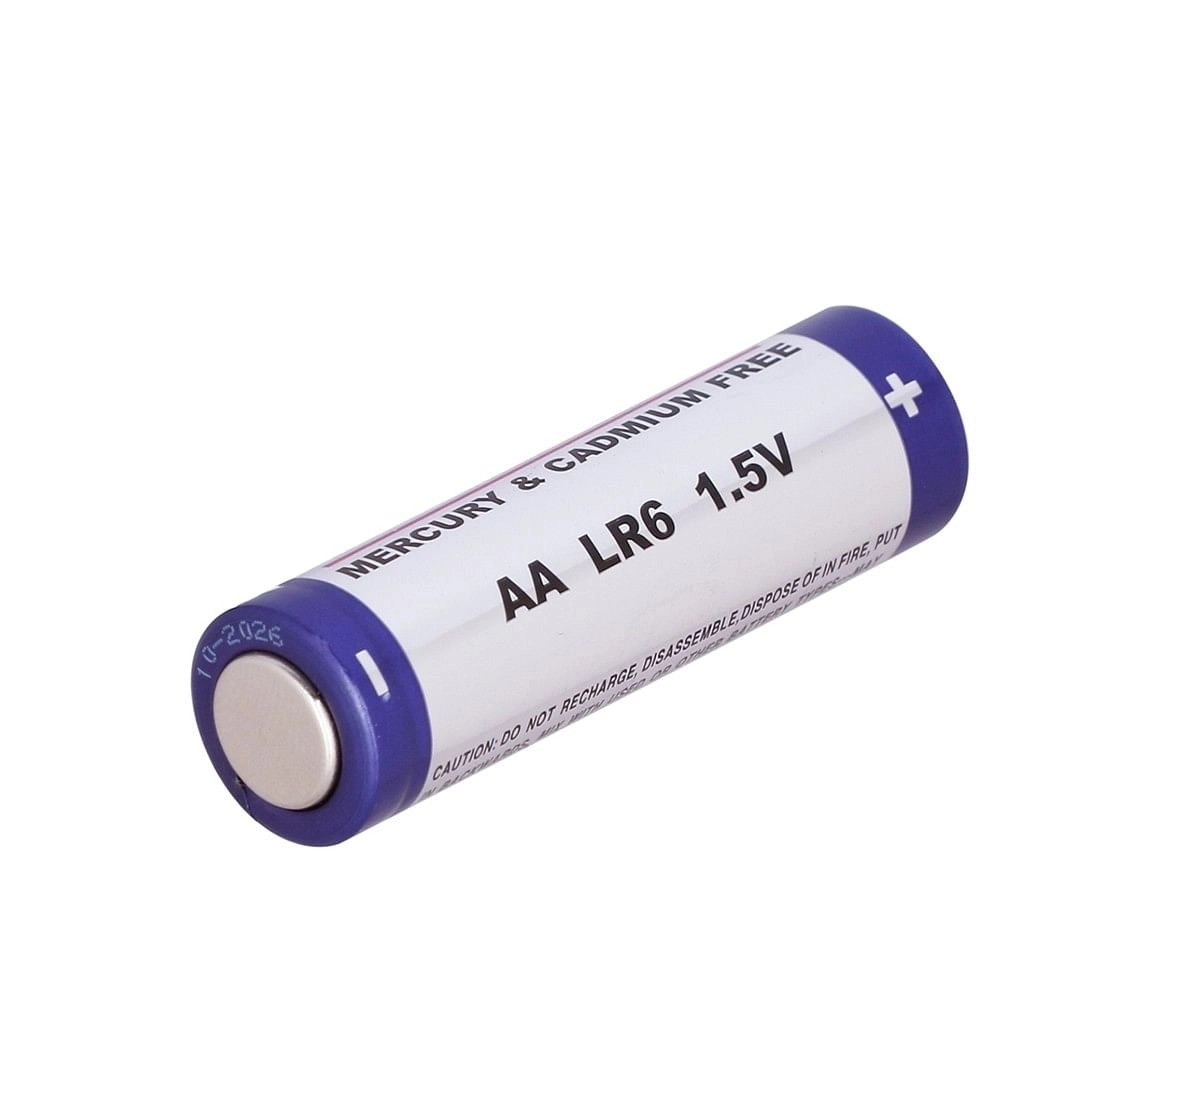 Immense AA Ultra Digital Alkaline battery Pack of 4, 3Y+